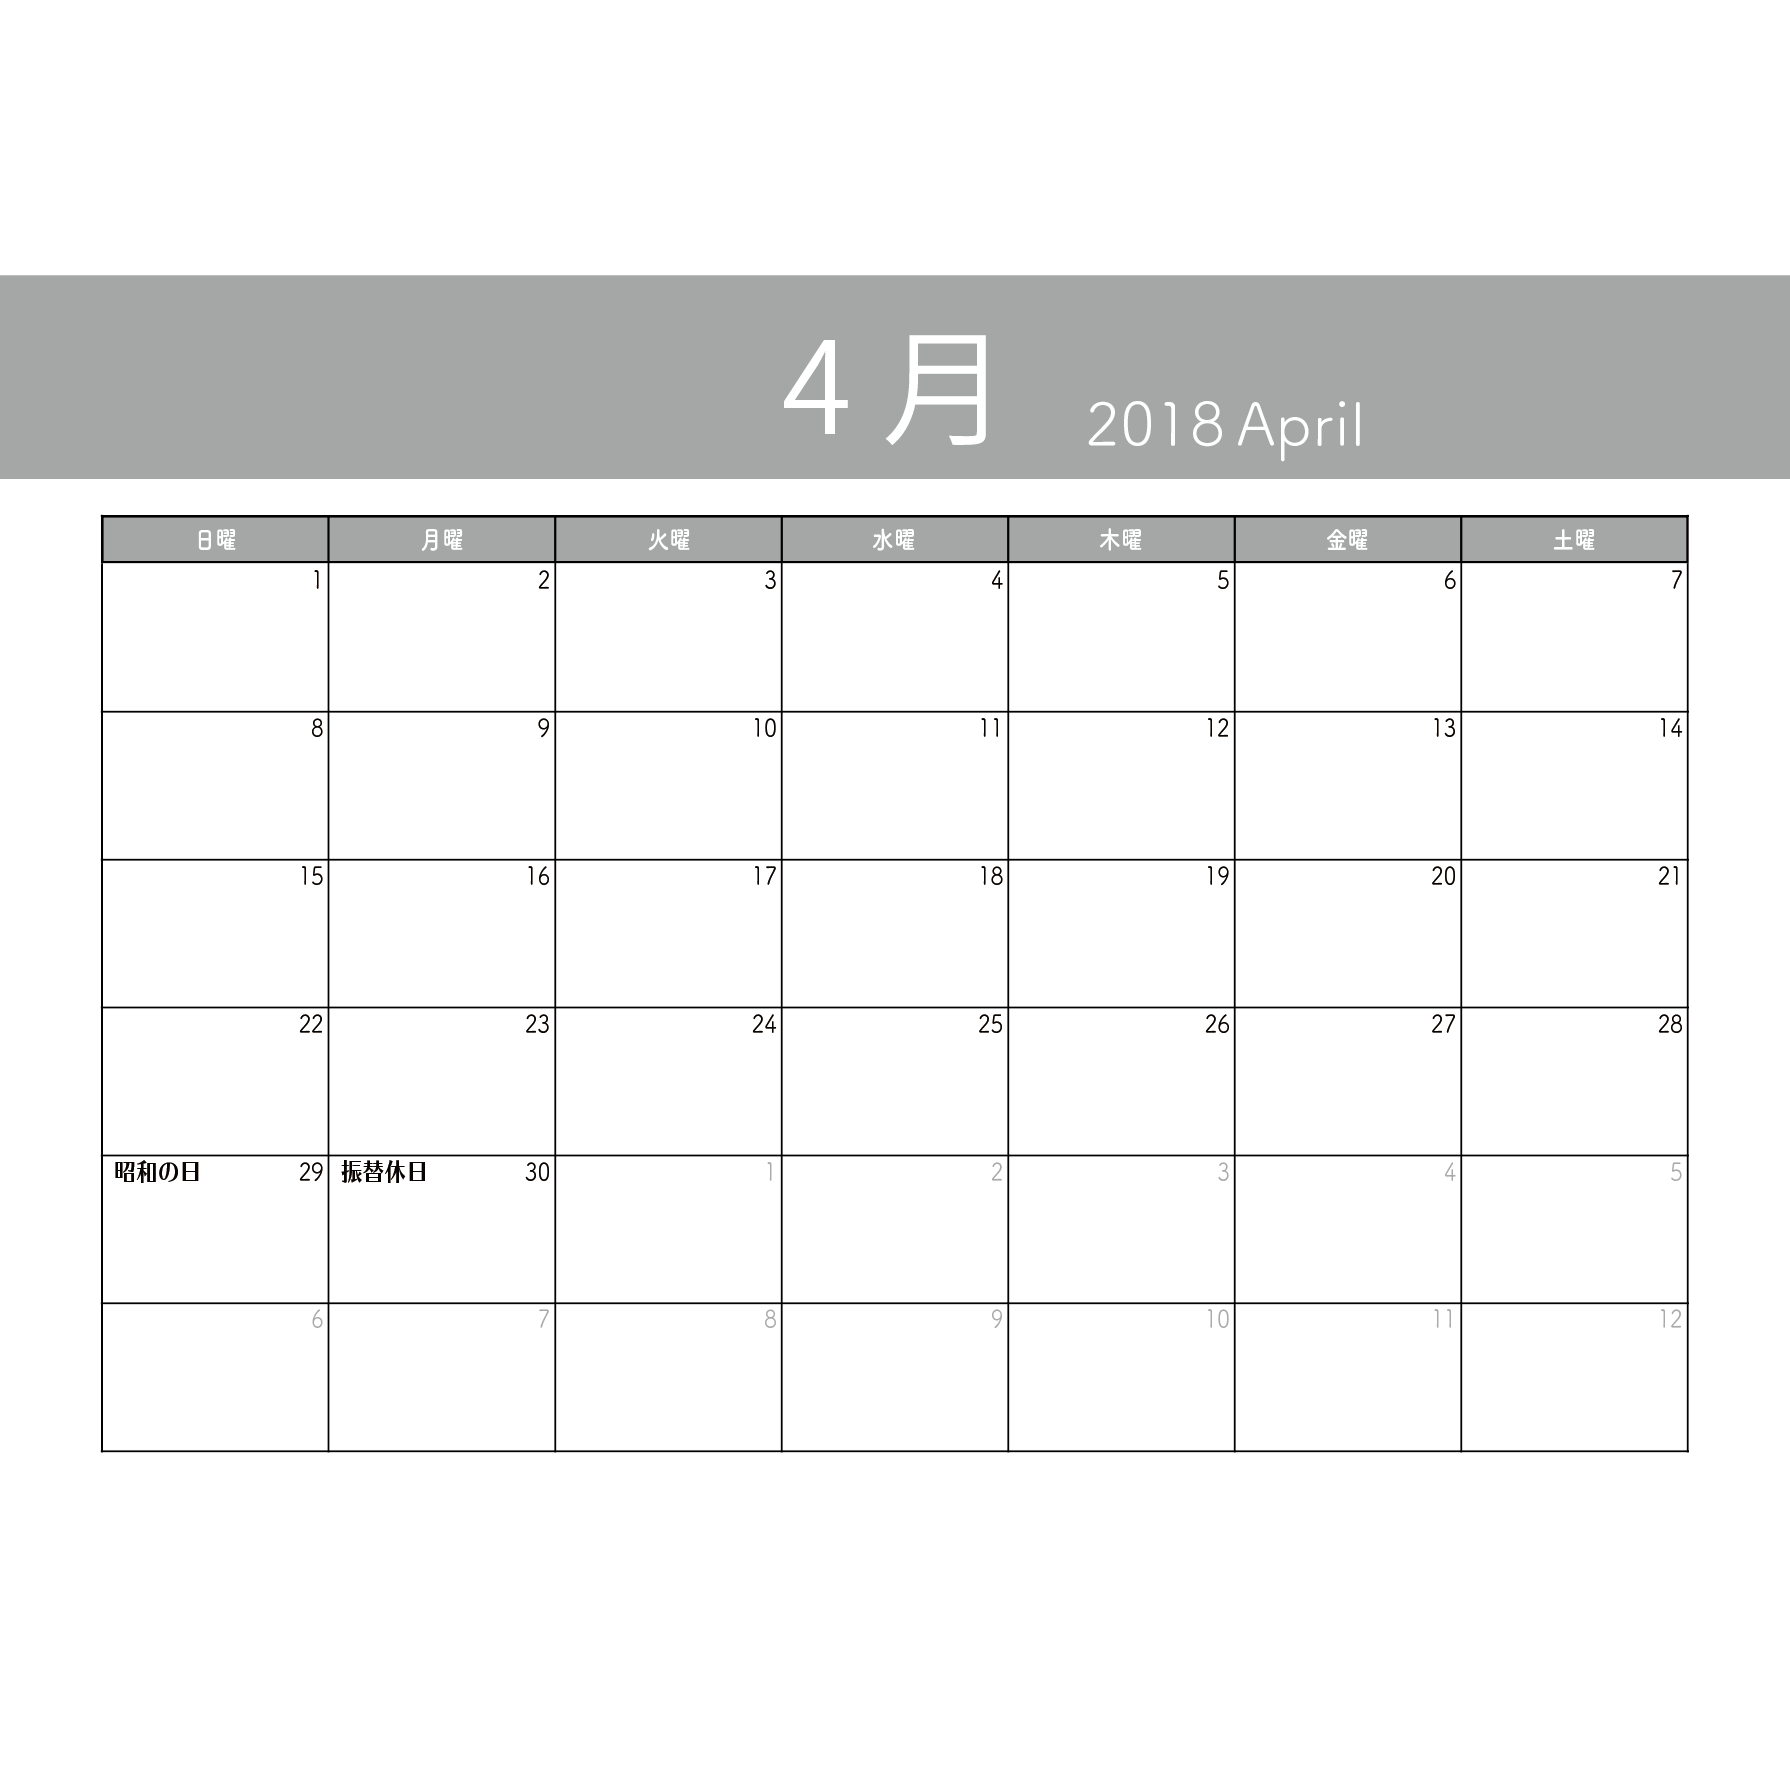 カレンダー 4月 2018 A4サイズ 横型 フリーのイラスト素材 商用